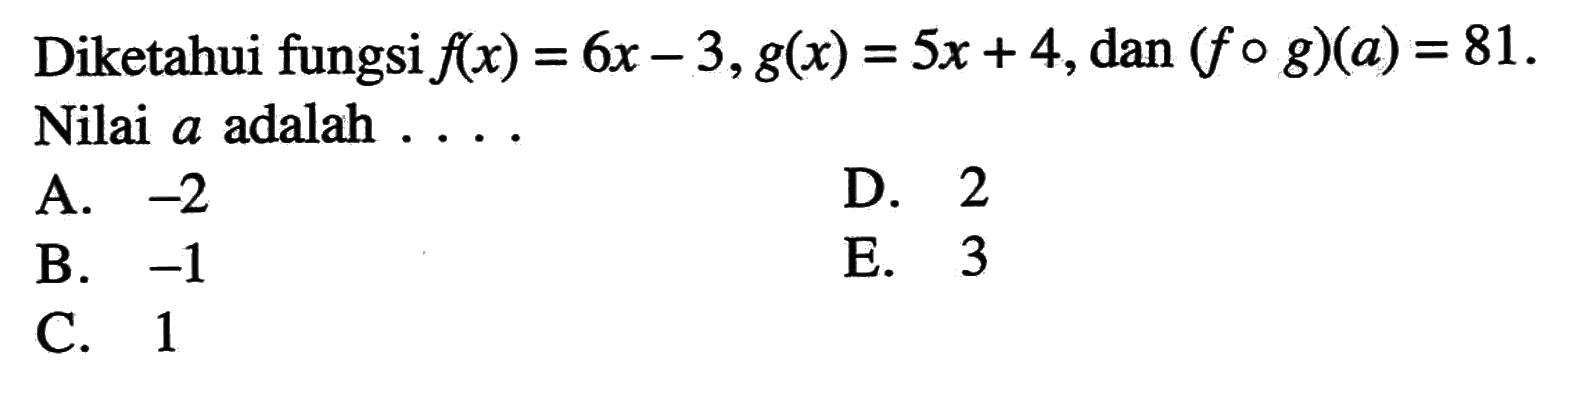 Diketahui fungsi f(x)=6x-3, g(x)=5x+4, dan (f o g)(a)=81 Nilai a adalah ....